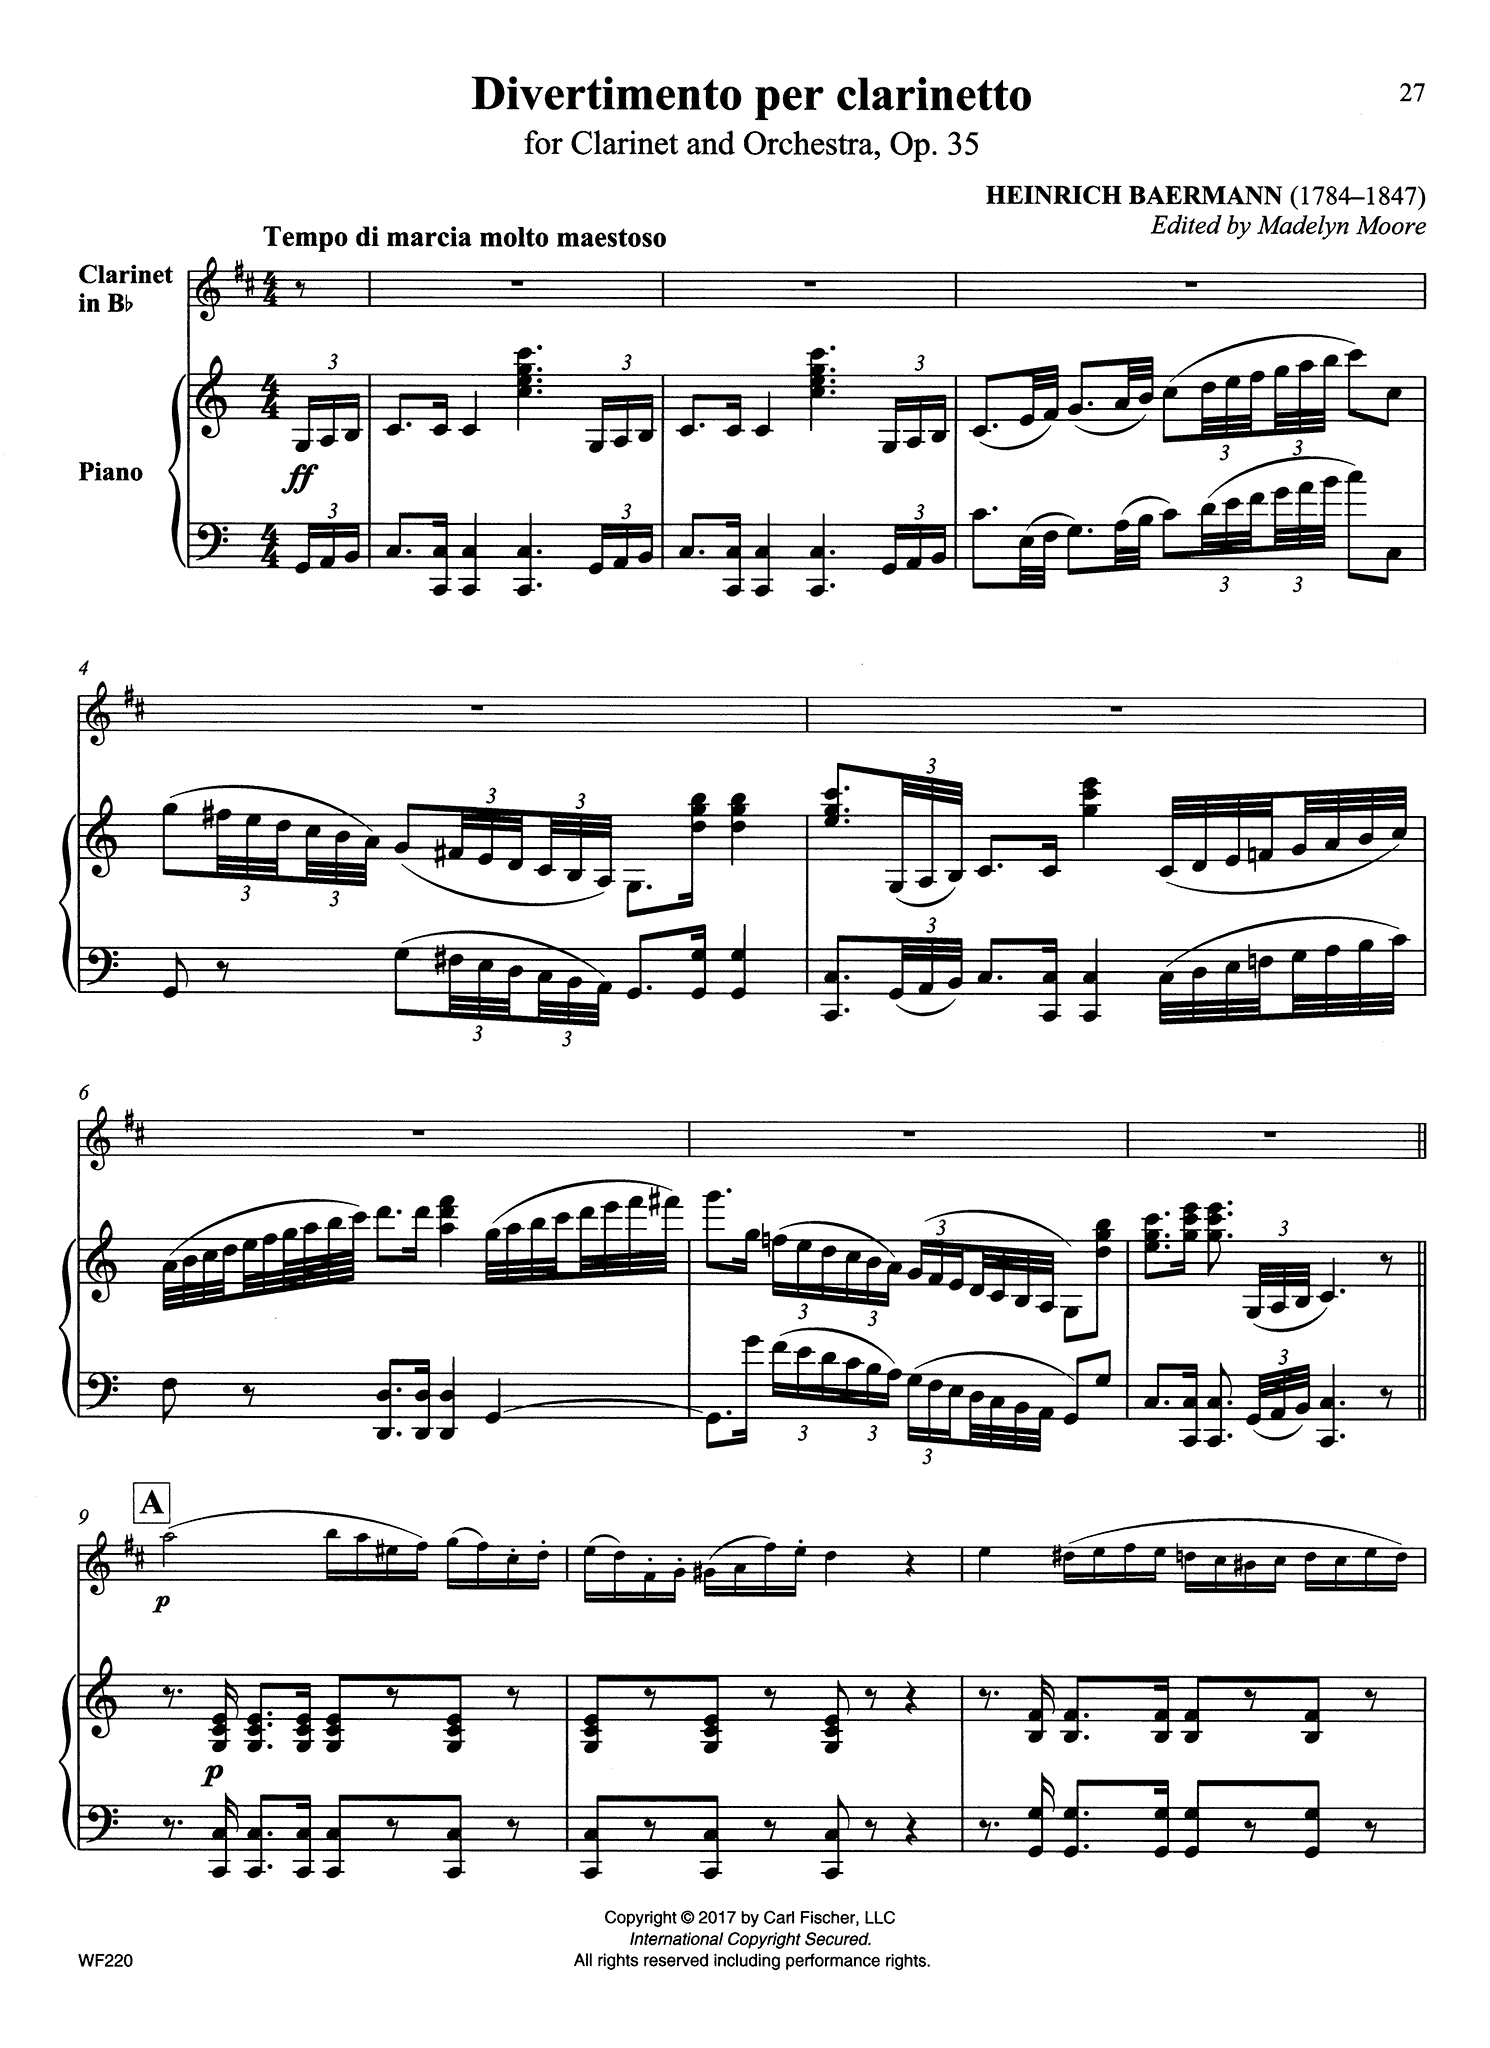 Divertimento, Op. 35 Score